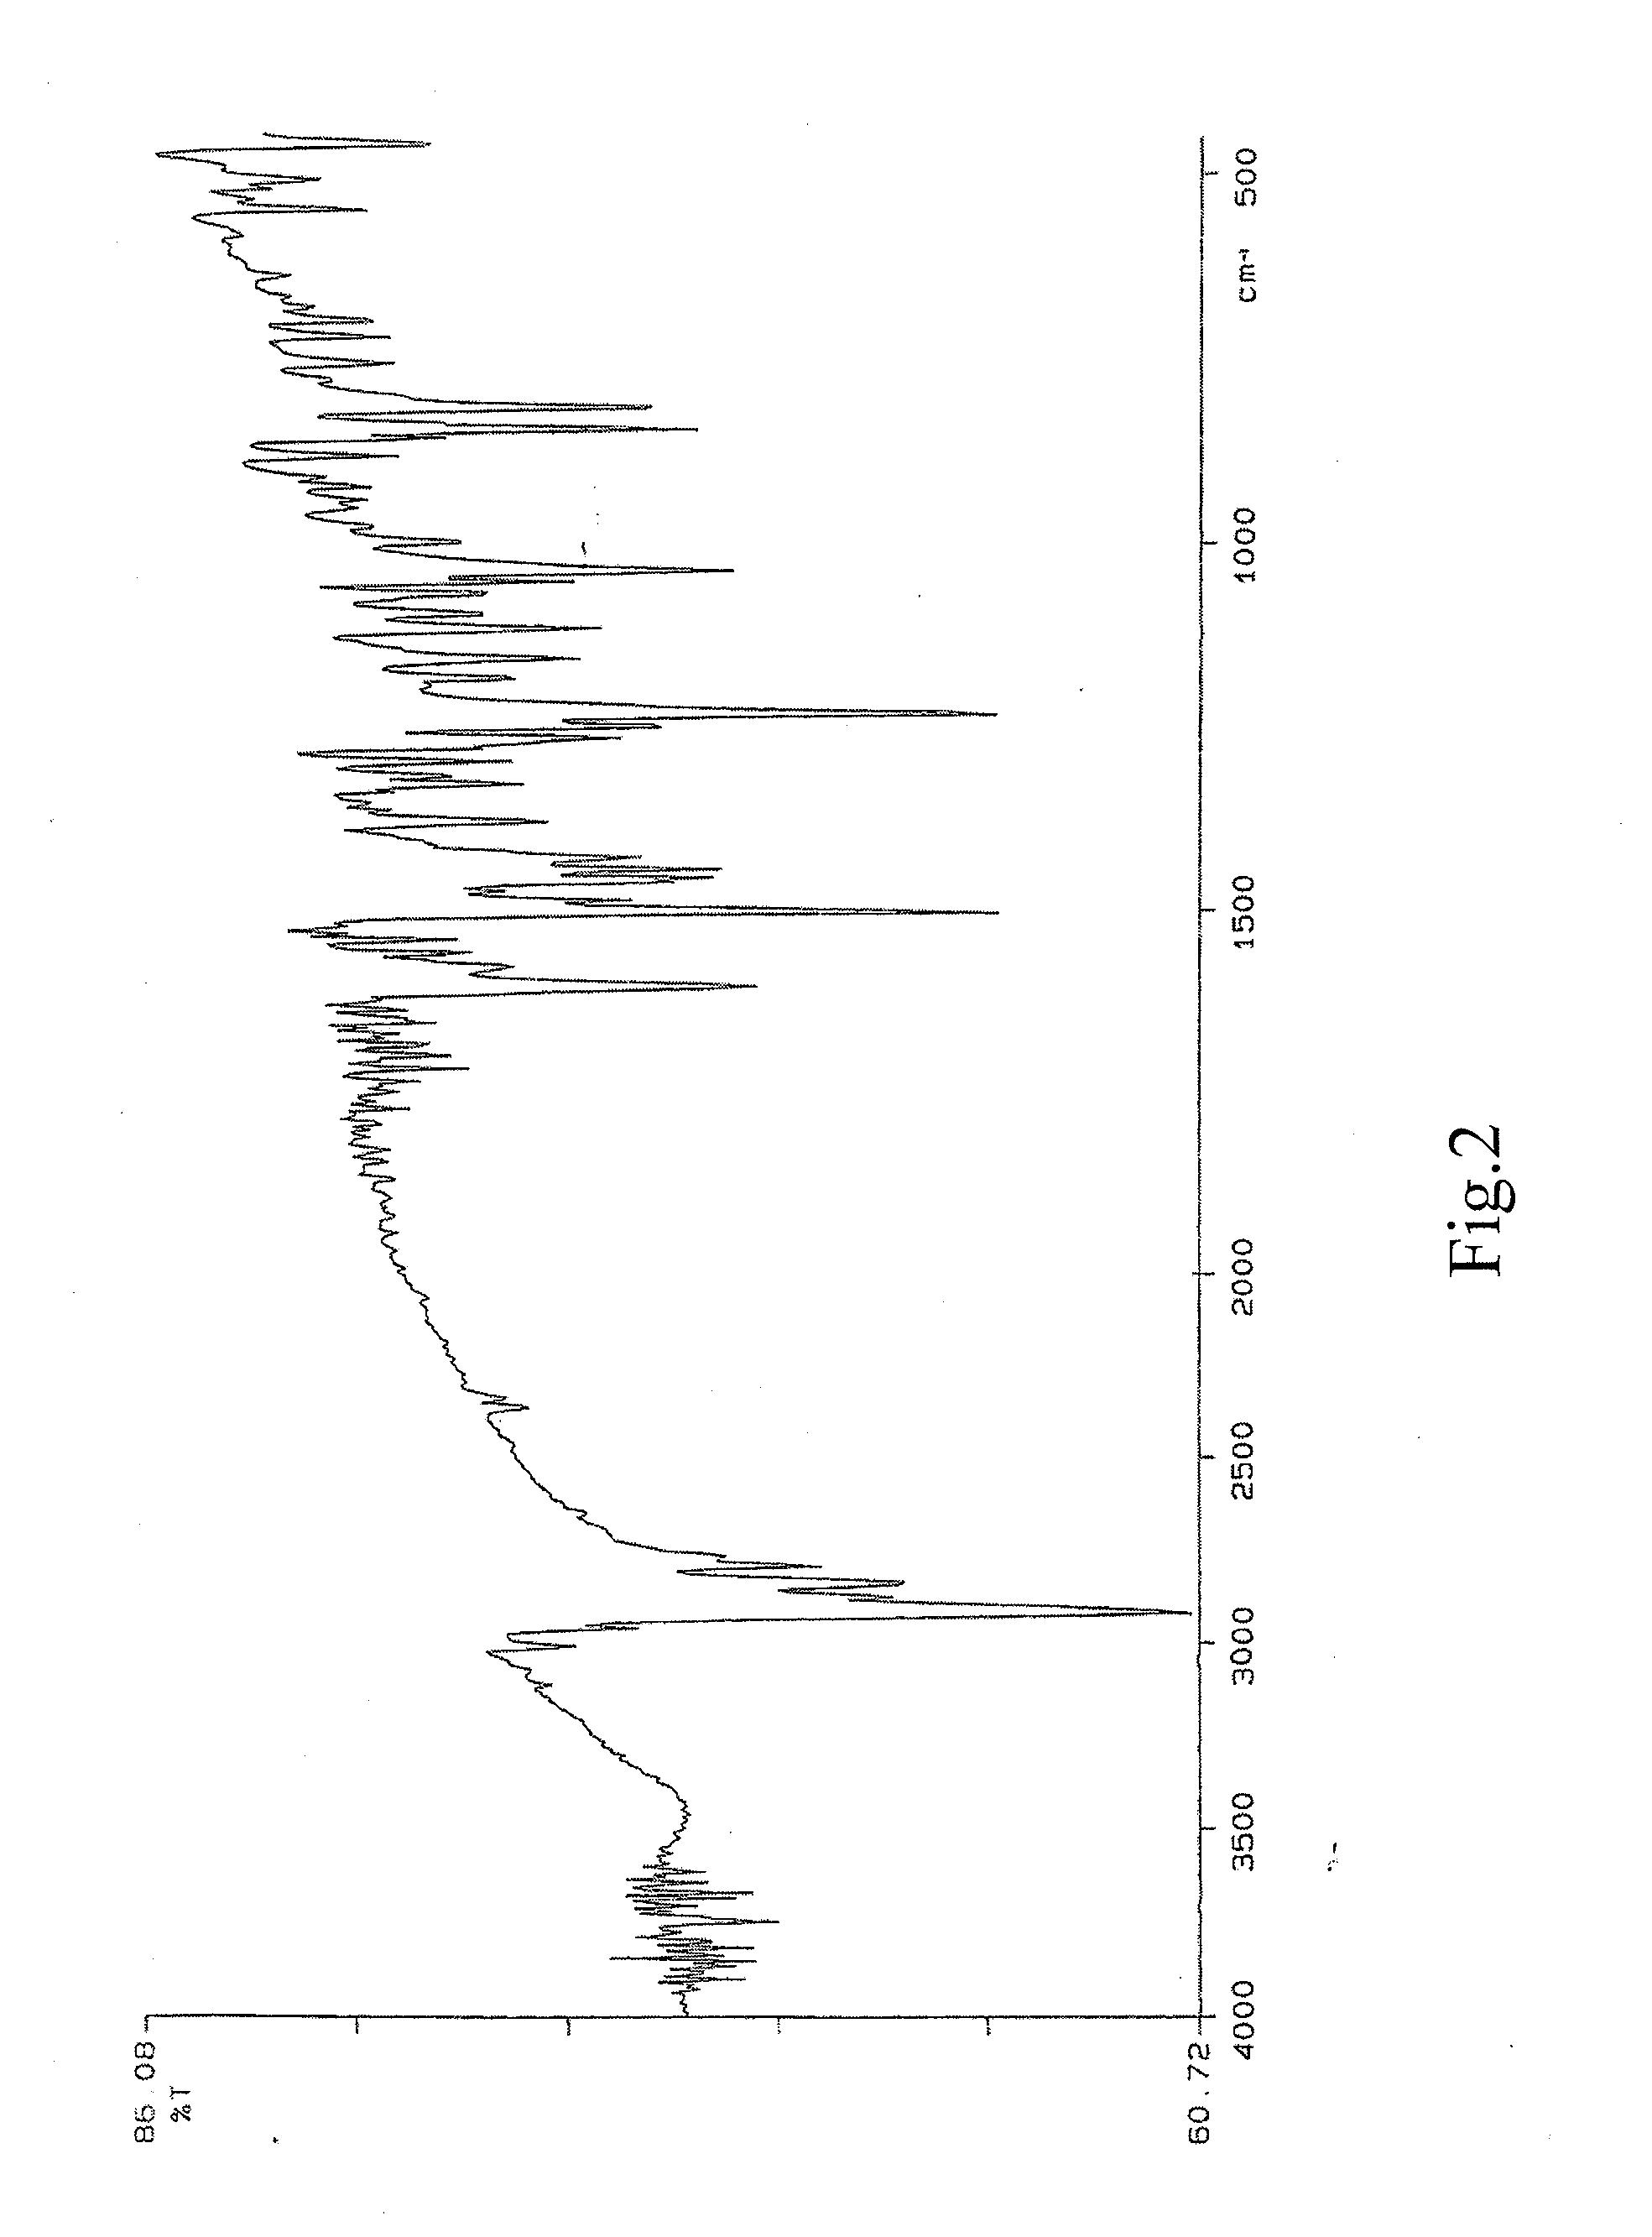 Glycyrrhizinates of morphinan derivatives